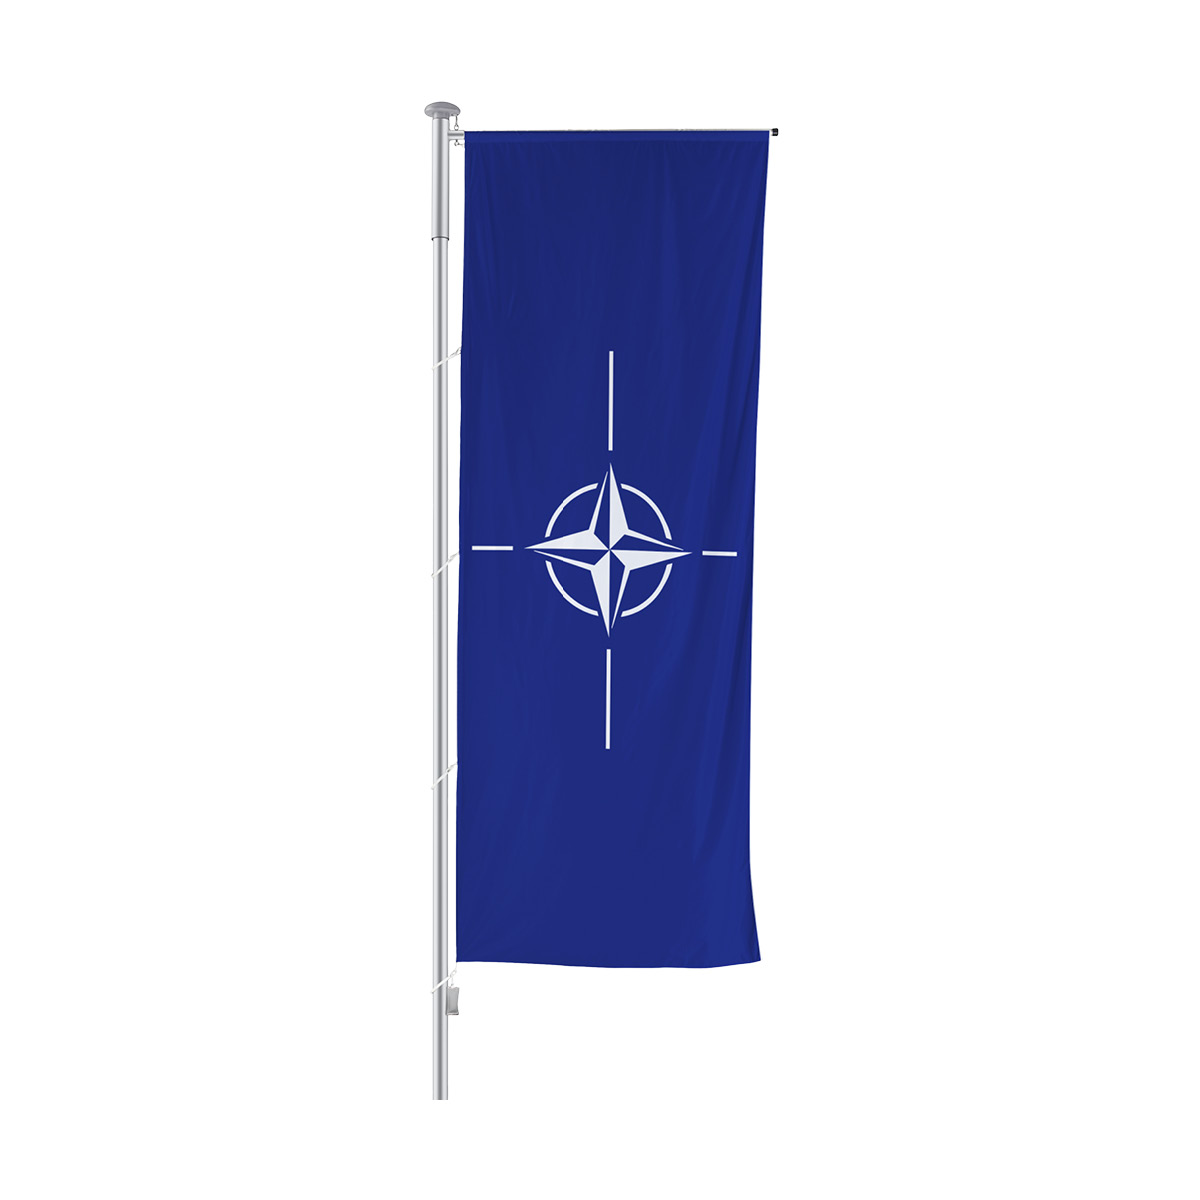 Auslegermastenfahne Sondermotivfahne Nato